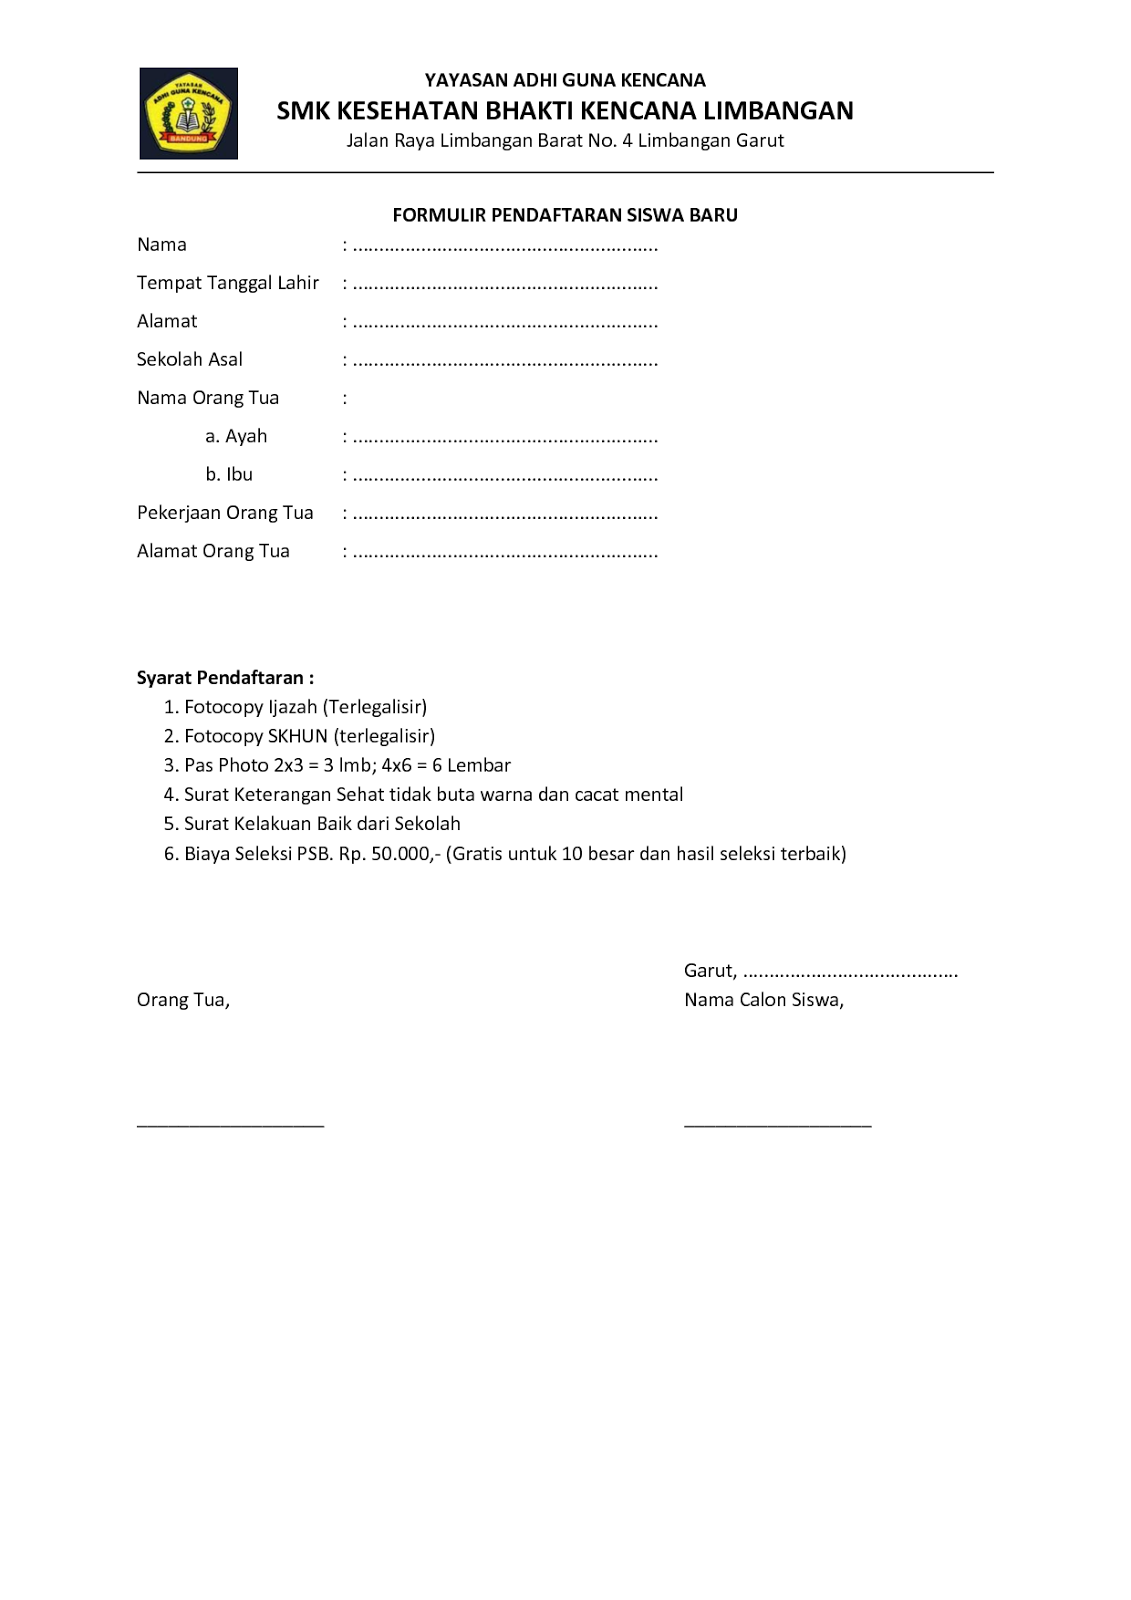 Contoh Formulir Pendaftaran Lomba / Siswa baru